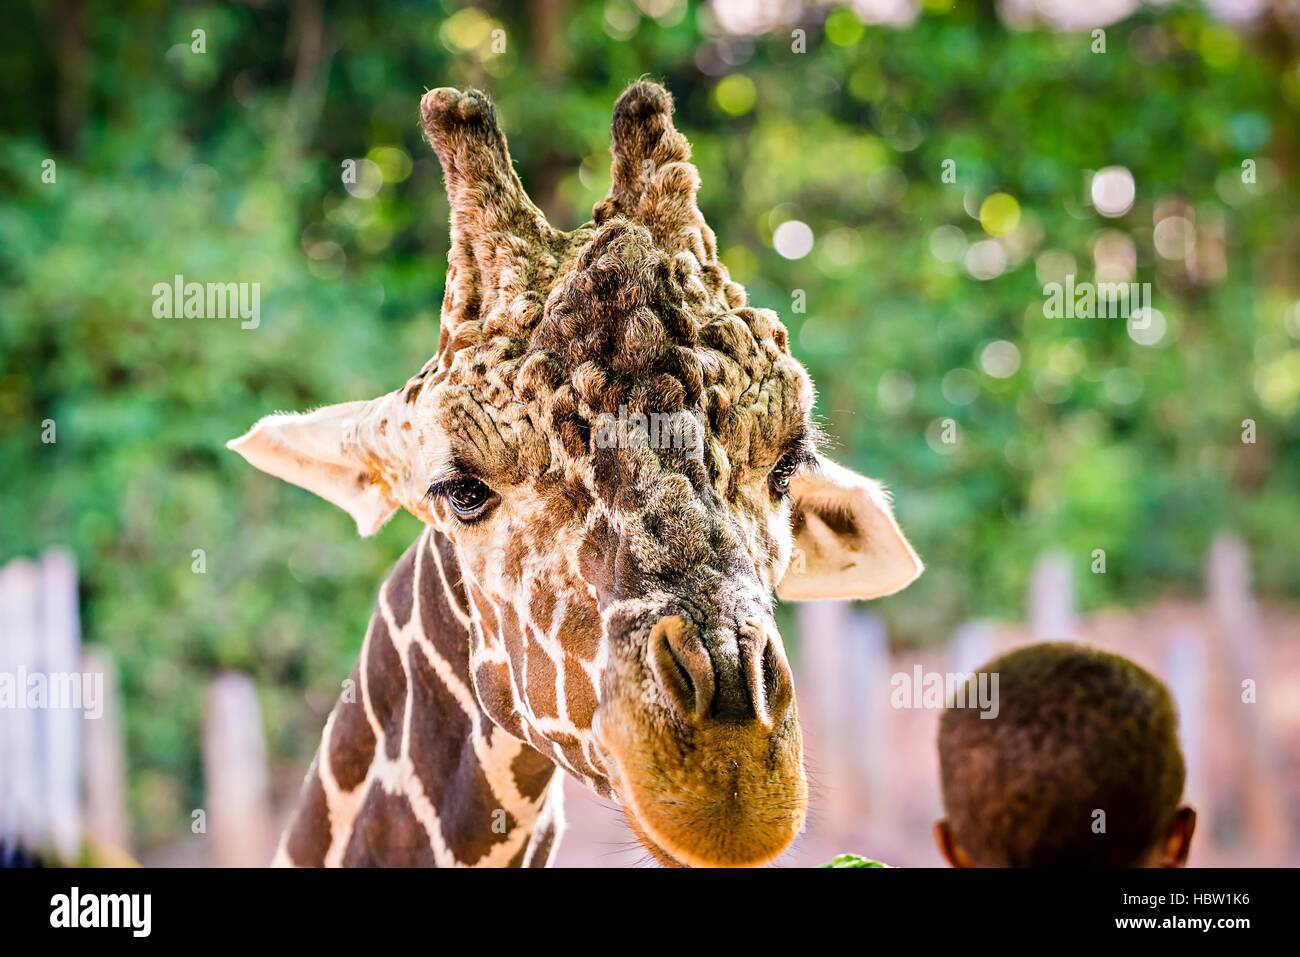 La giraffa avanzamento sul verde delle foglie di lattuga Foto Stock